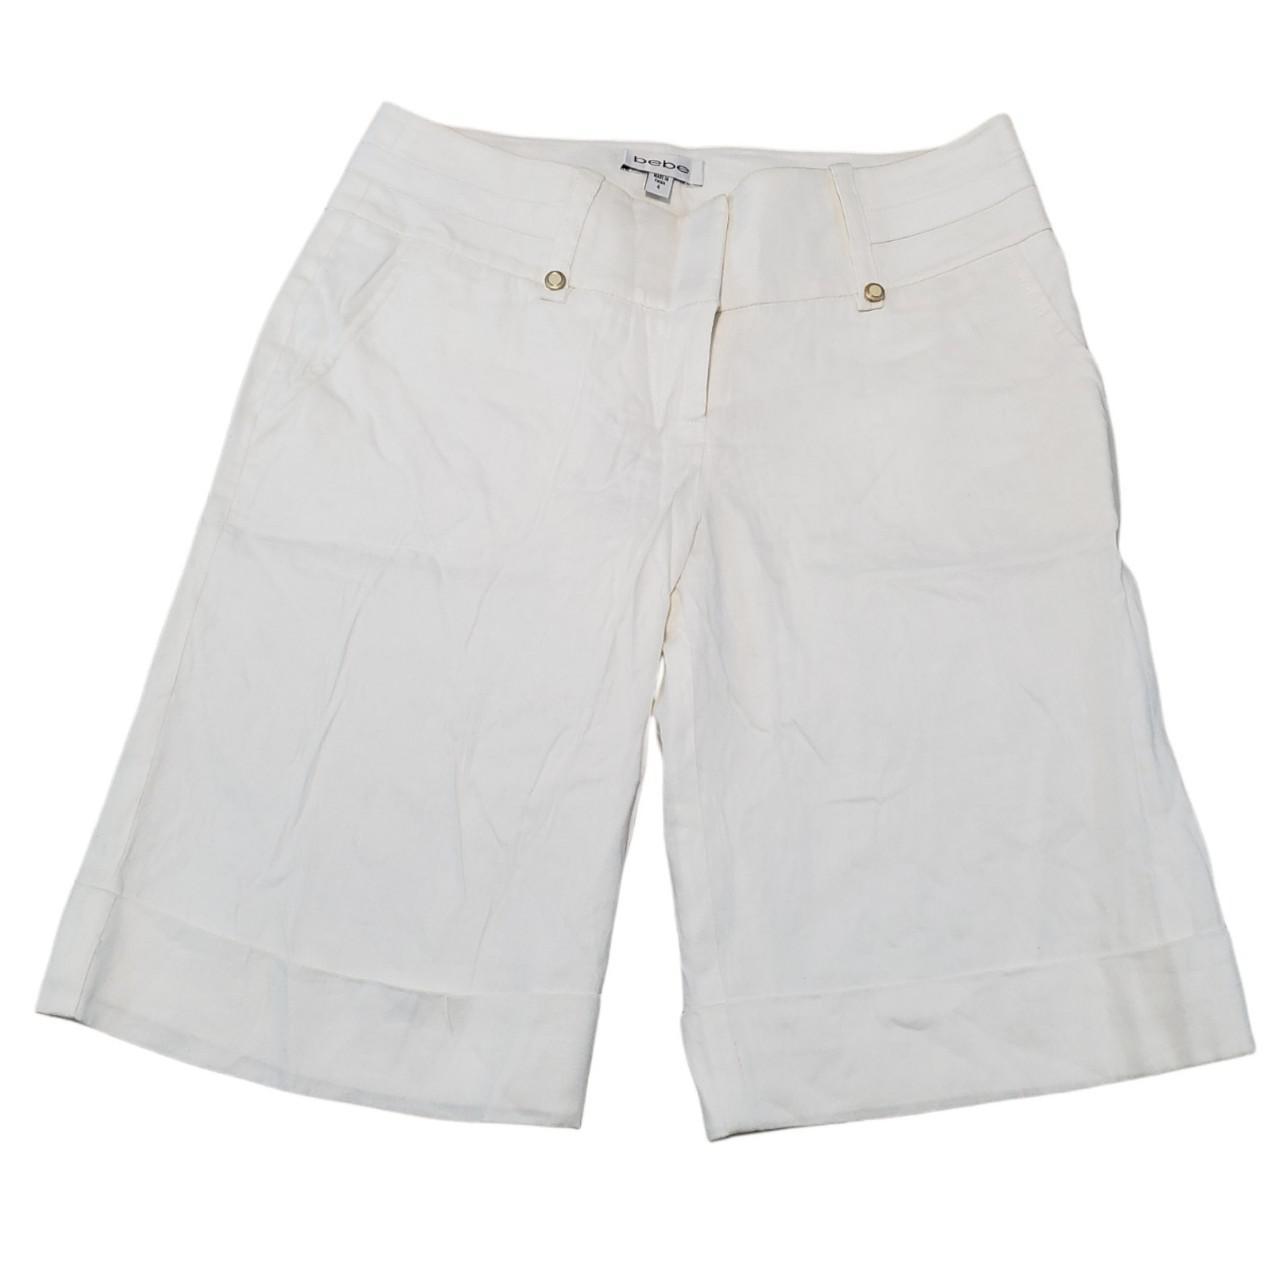 Product Image 1 - Babe Shorts Size 4 Bermuda